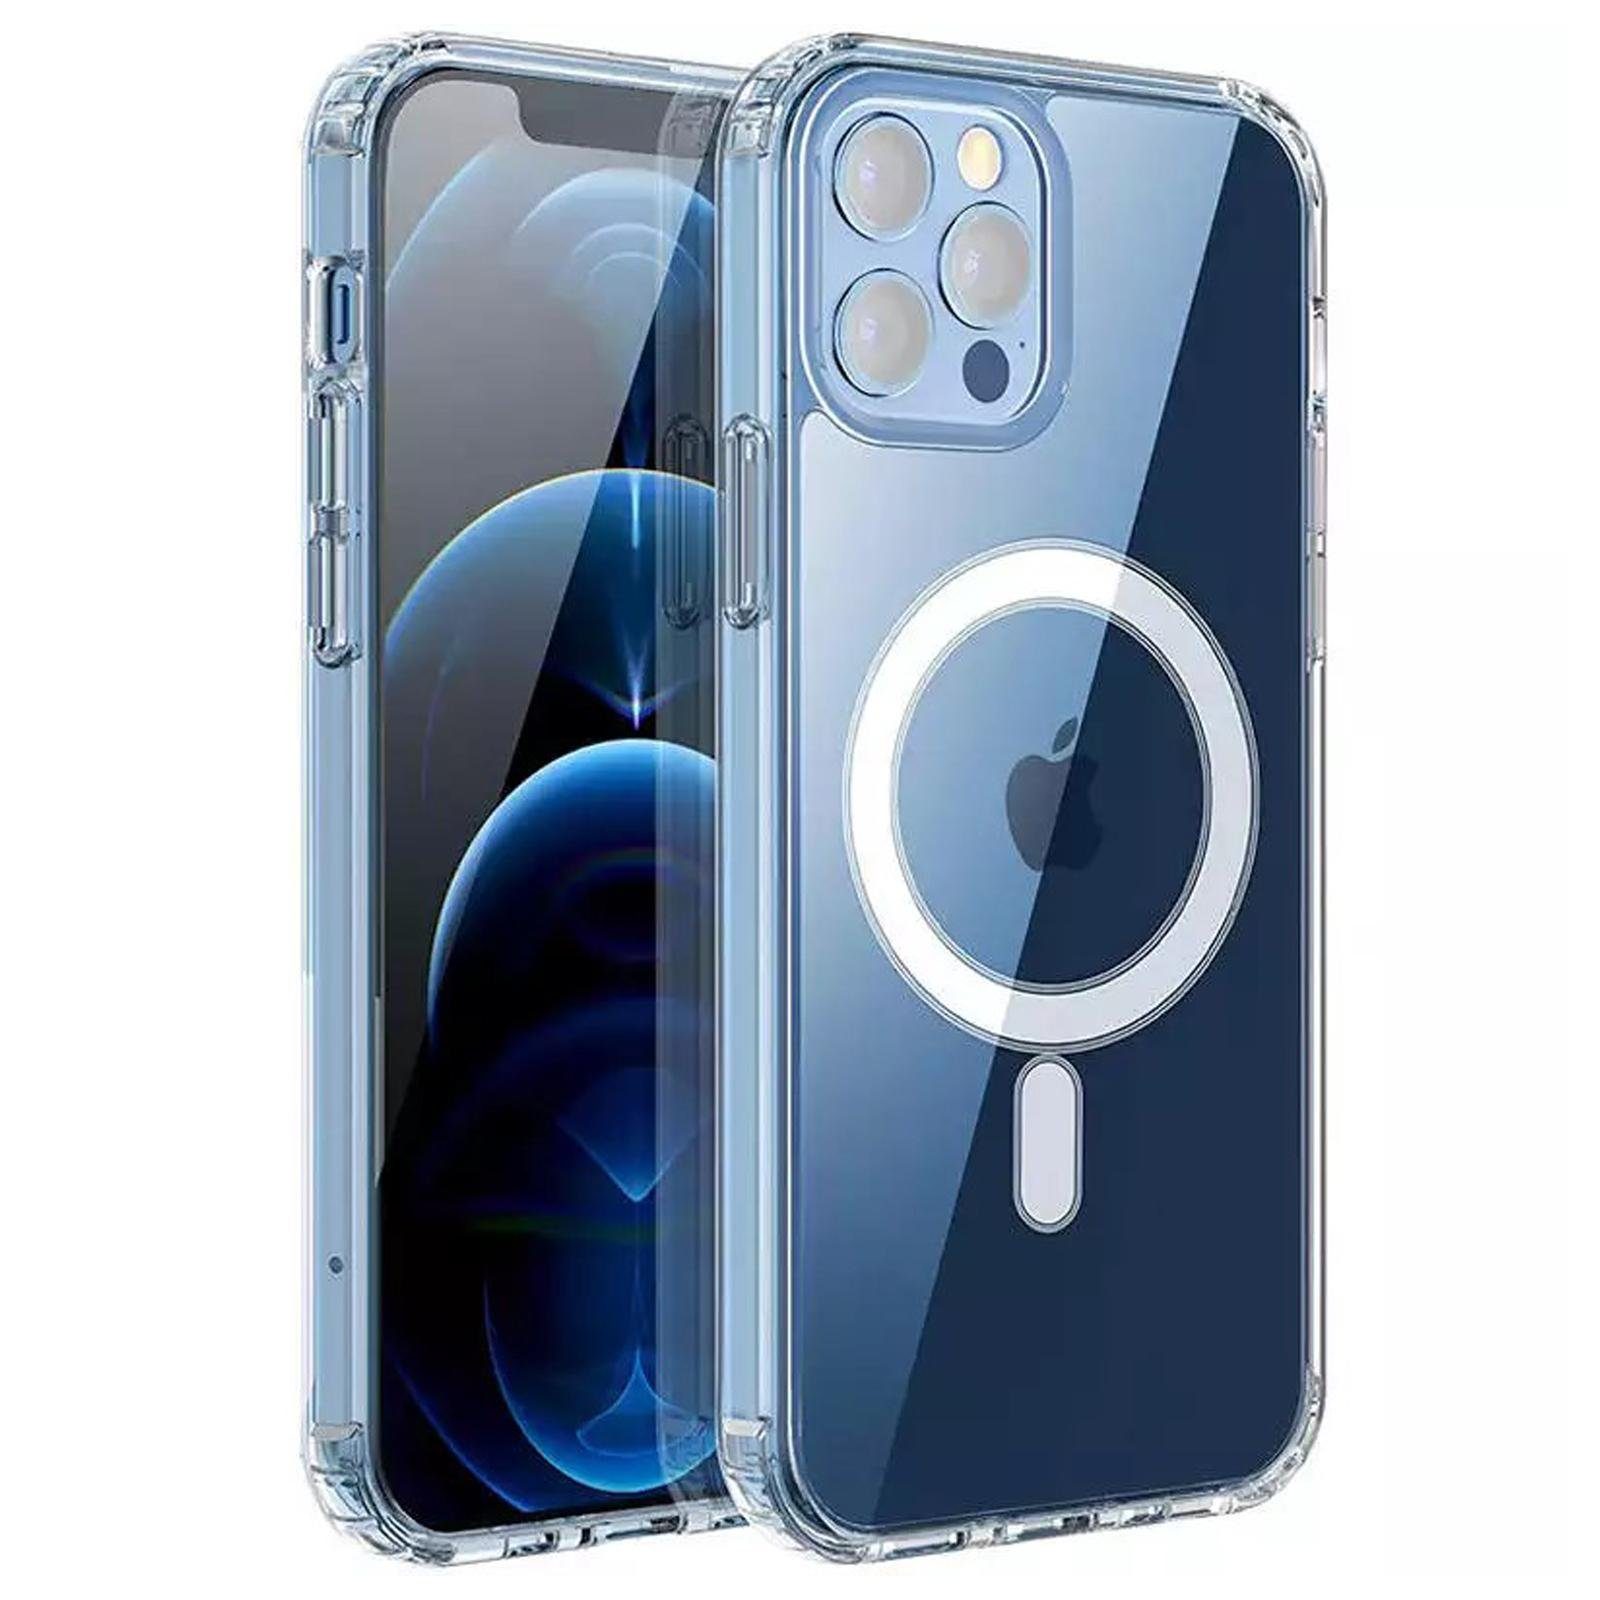 Numerva Smartphone-Hülle Silikon Case für Apple iPhone 11 Pro, Transparente  Schutzhülle Bumper Case MagSafe kompatibel